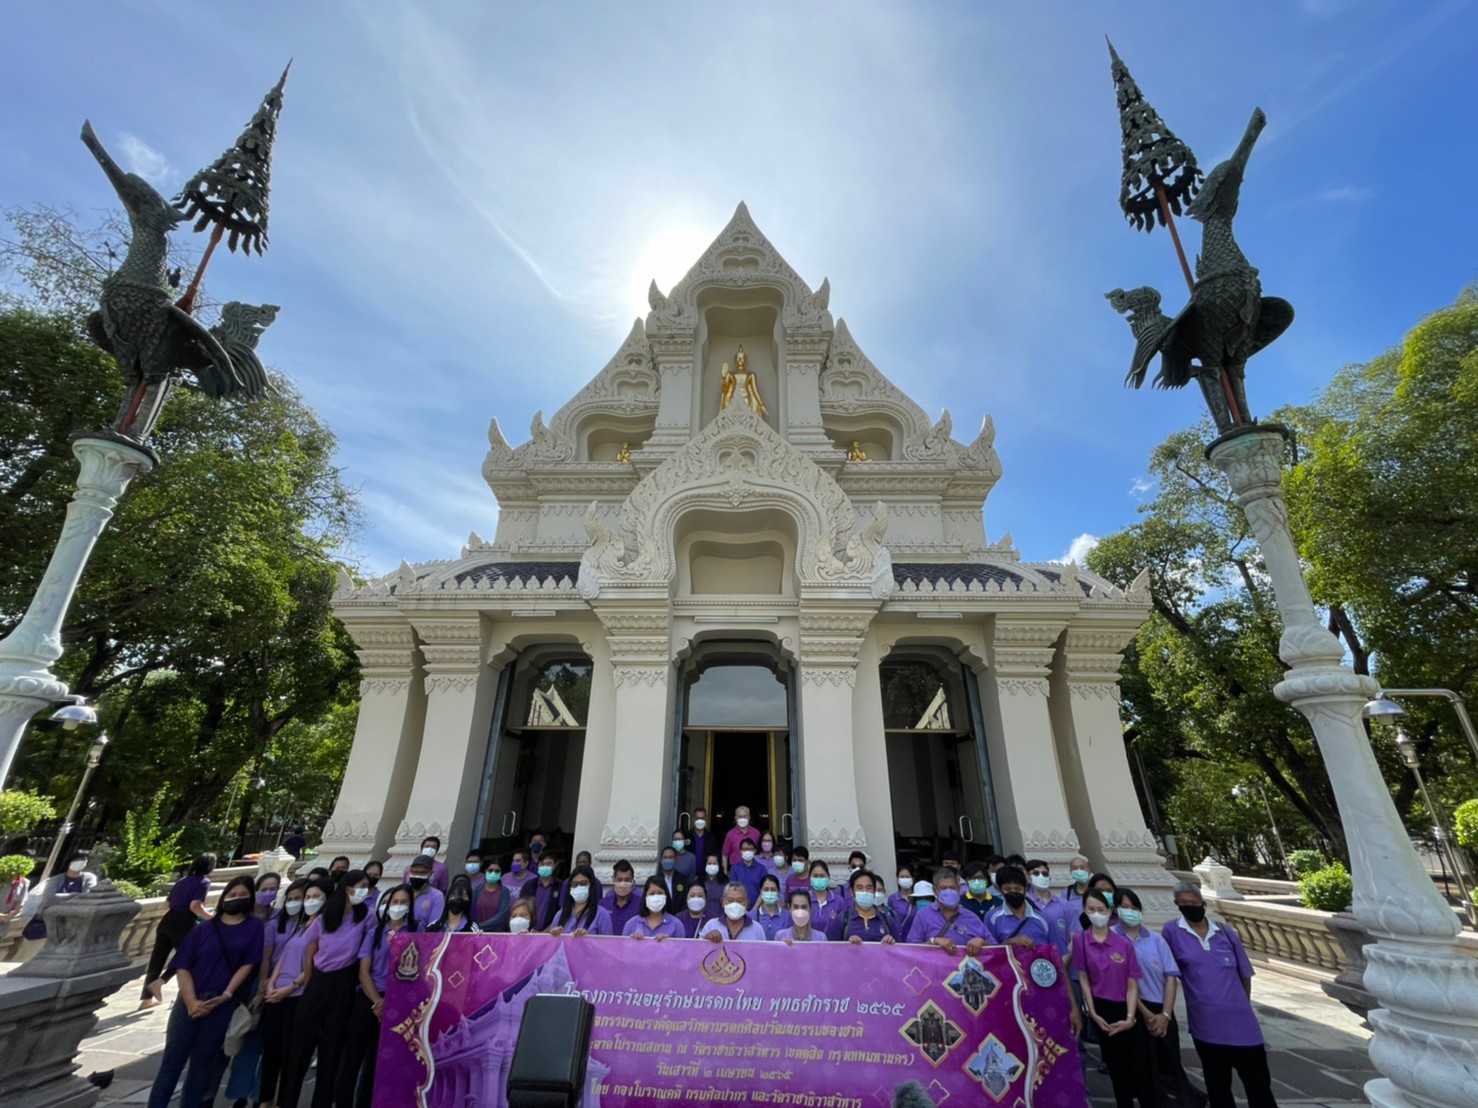 โครงการวันอนุรักษ์มรดกไทย กิจกรรมรณรงค์ดูแลรักษามรดกศิลปวัฒนธรรมของชาติ ประจำปี 2565